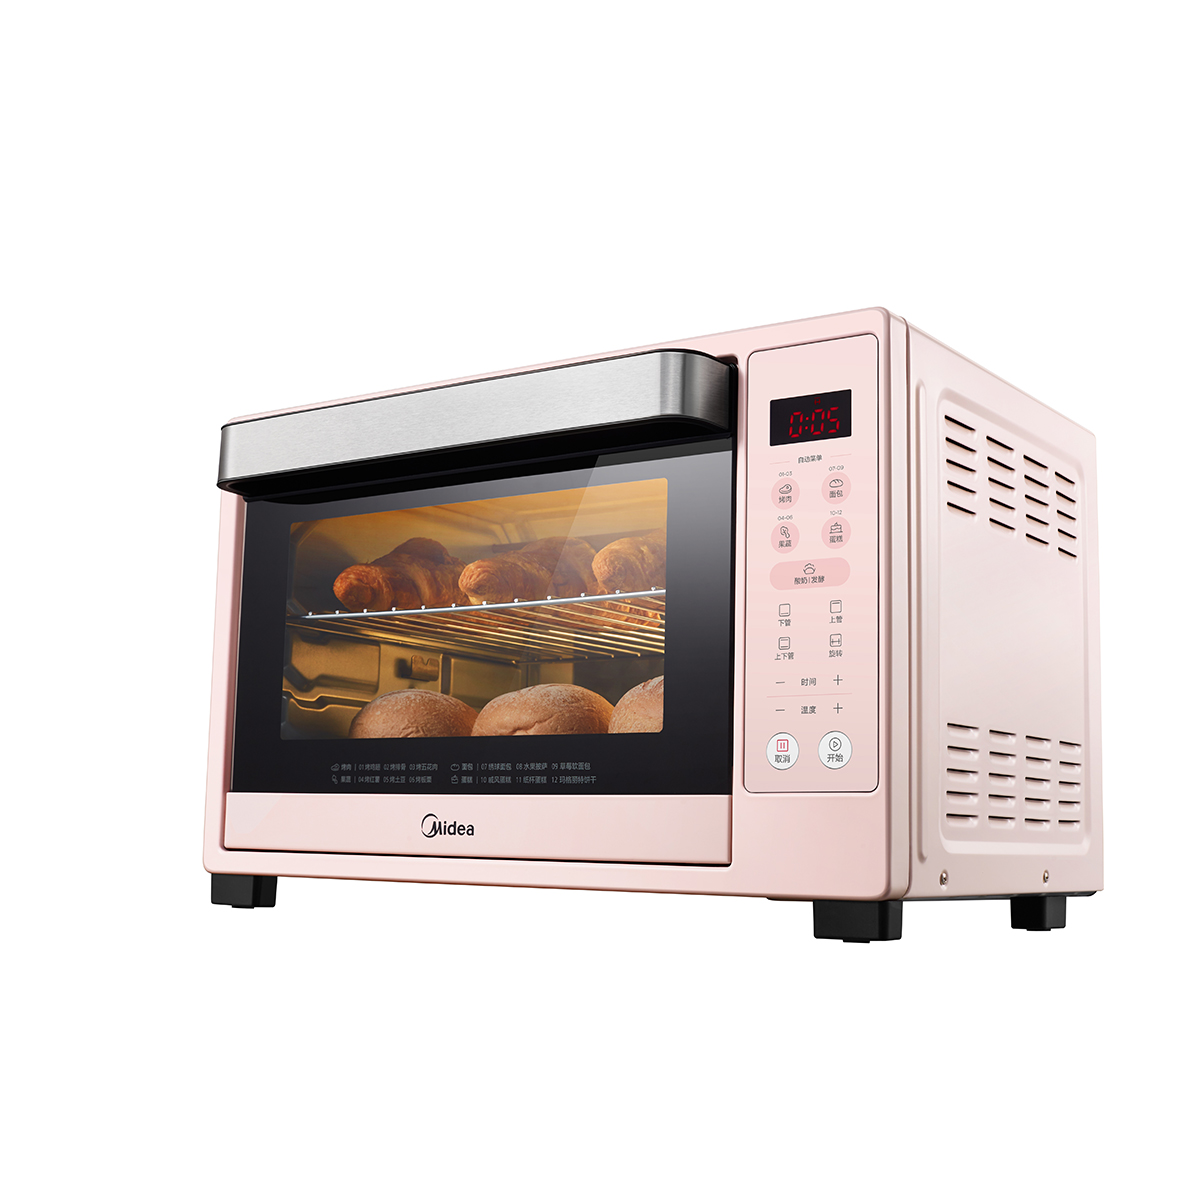 悠智AI智能电烤箱让你随时开启美味享受，体验DIY美食的乐趣！ - 哔哩哔哩